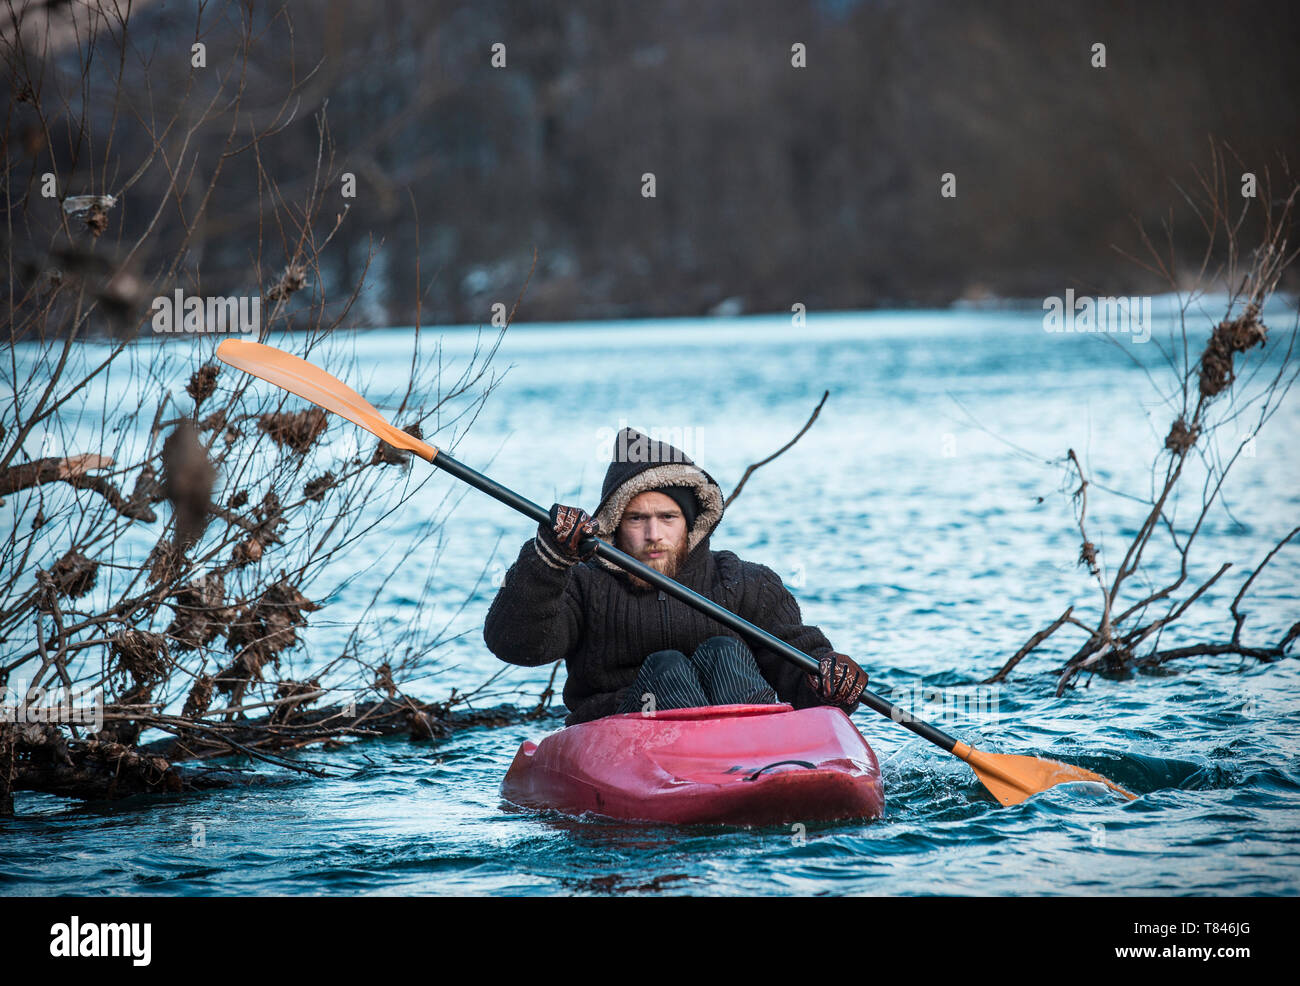 Giovane uomo kayak sul fiume in inverno, ritratto, Domodossola, Piemonte, Italia Foto Stock